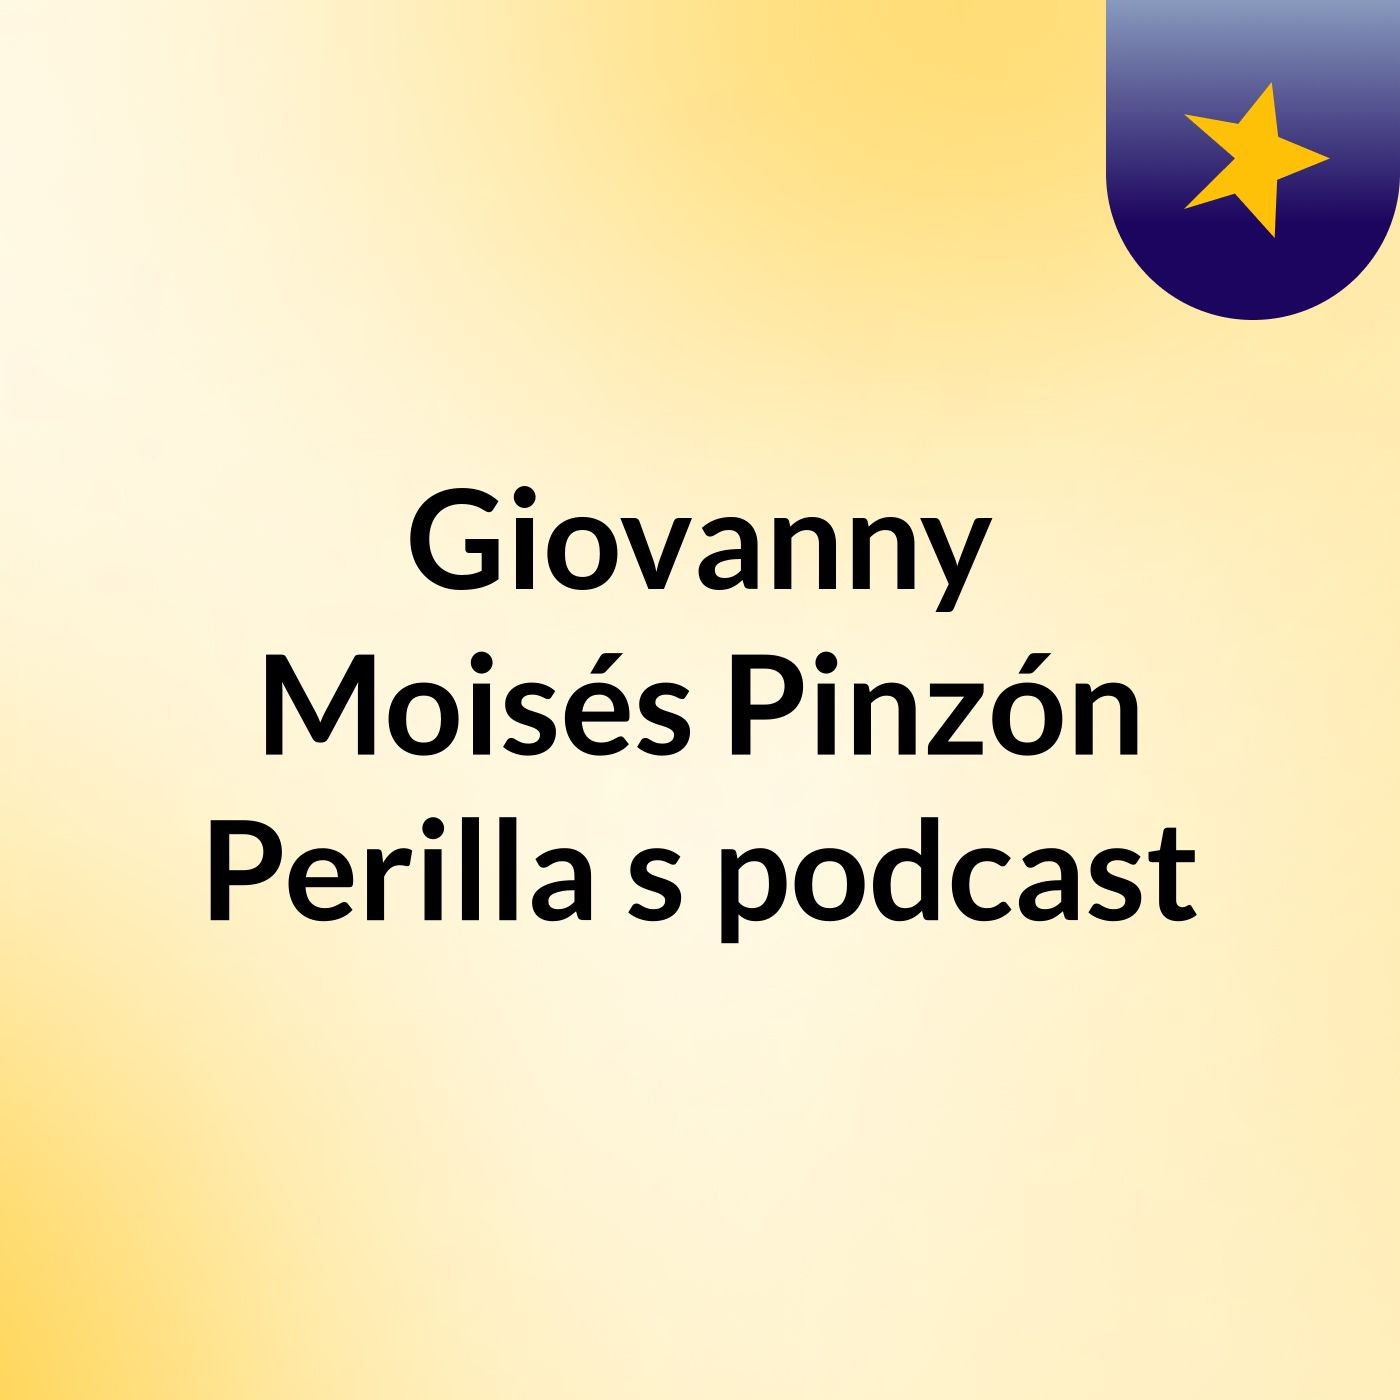 Giovanny Moisés Pinzón Perilla's podcast